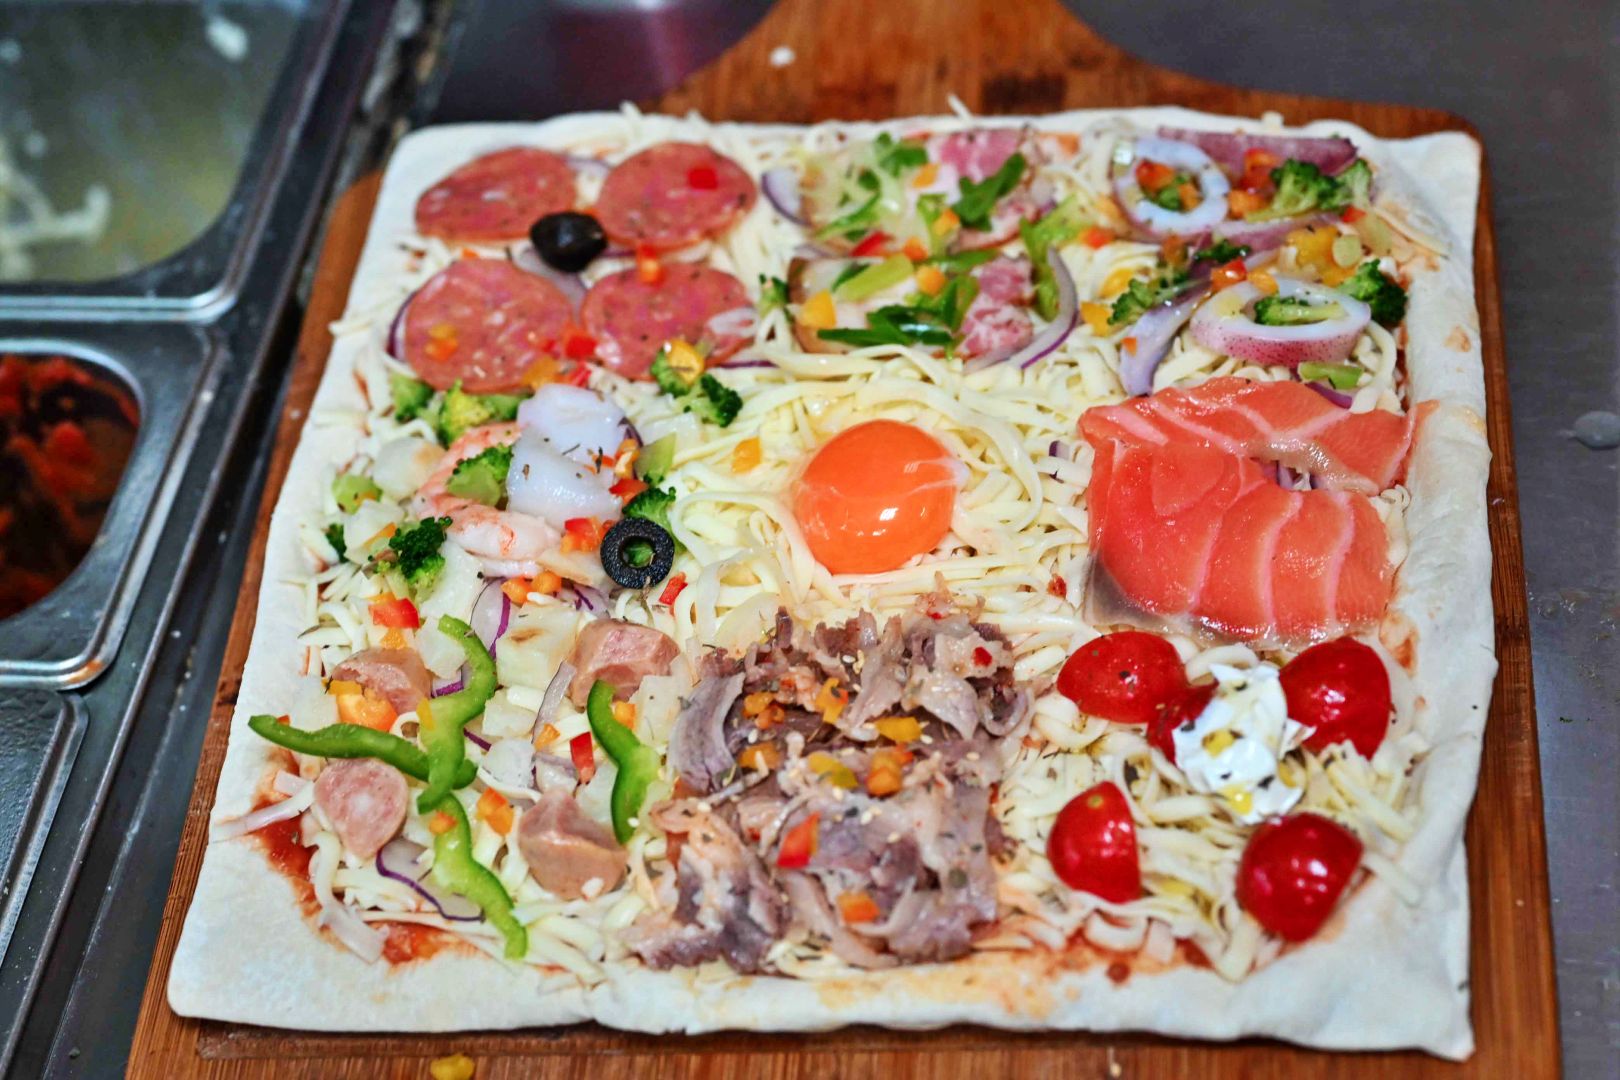 愛披薩ipizza, 愛披薩, 愛披薩菜單, 愛披薩推薦, 士林美食